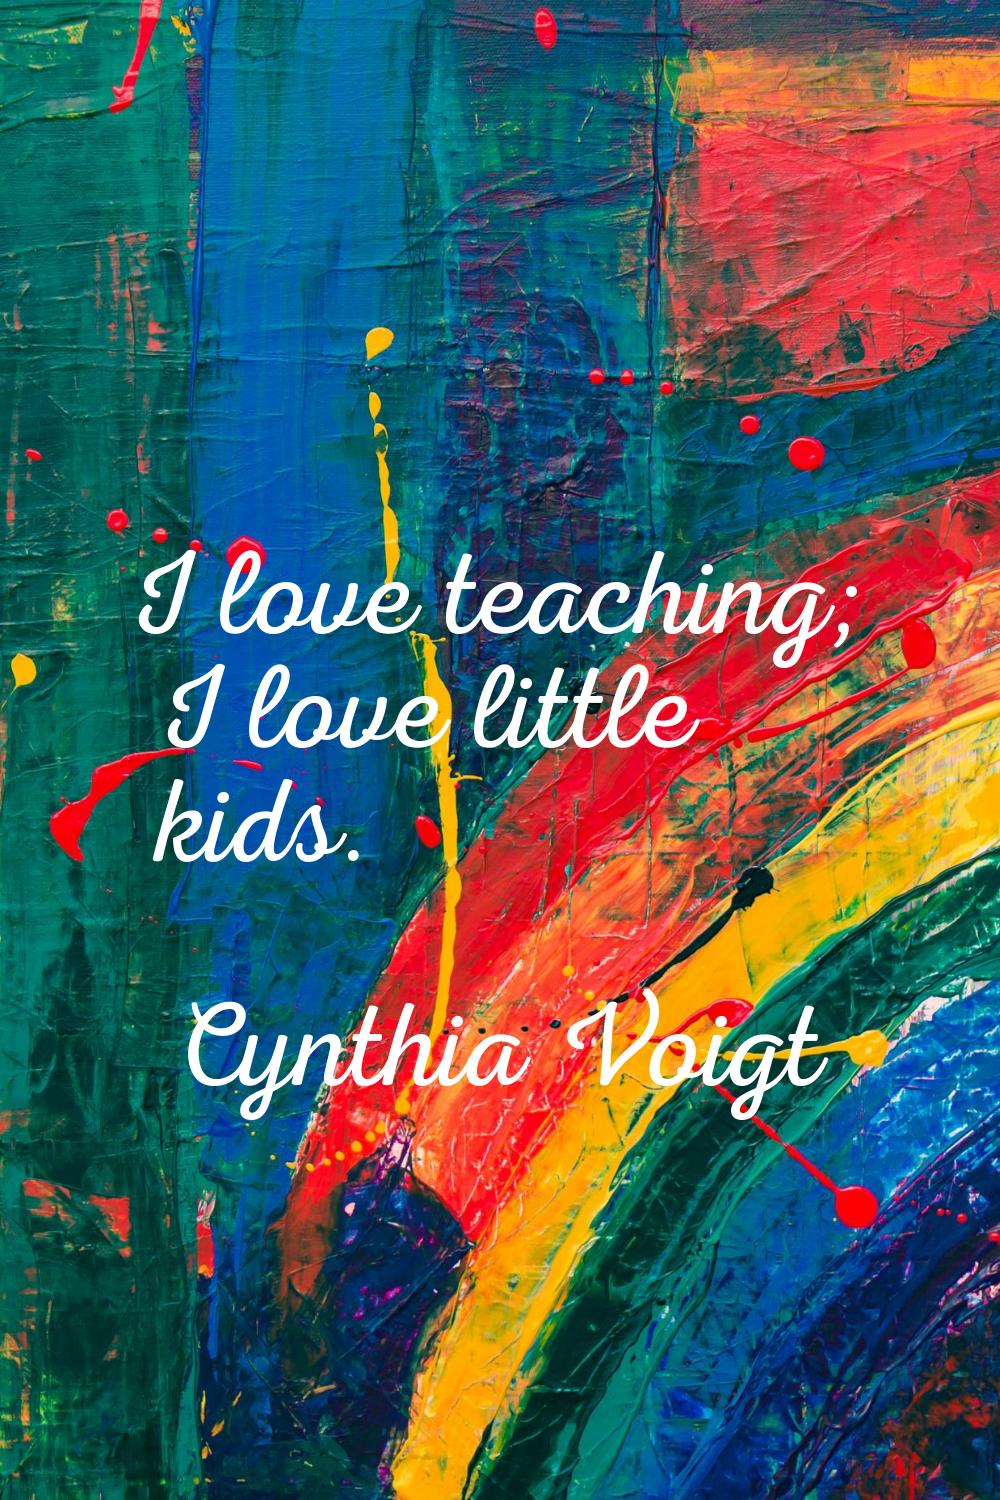 I love teaching; I love little kids.